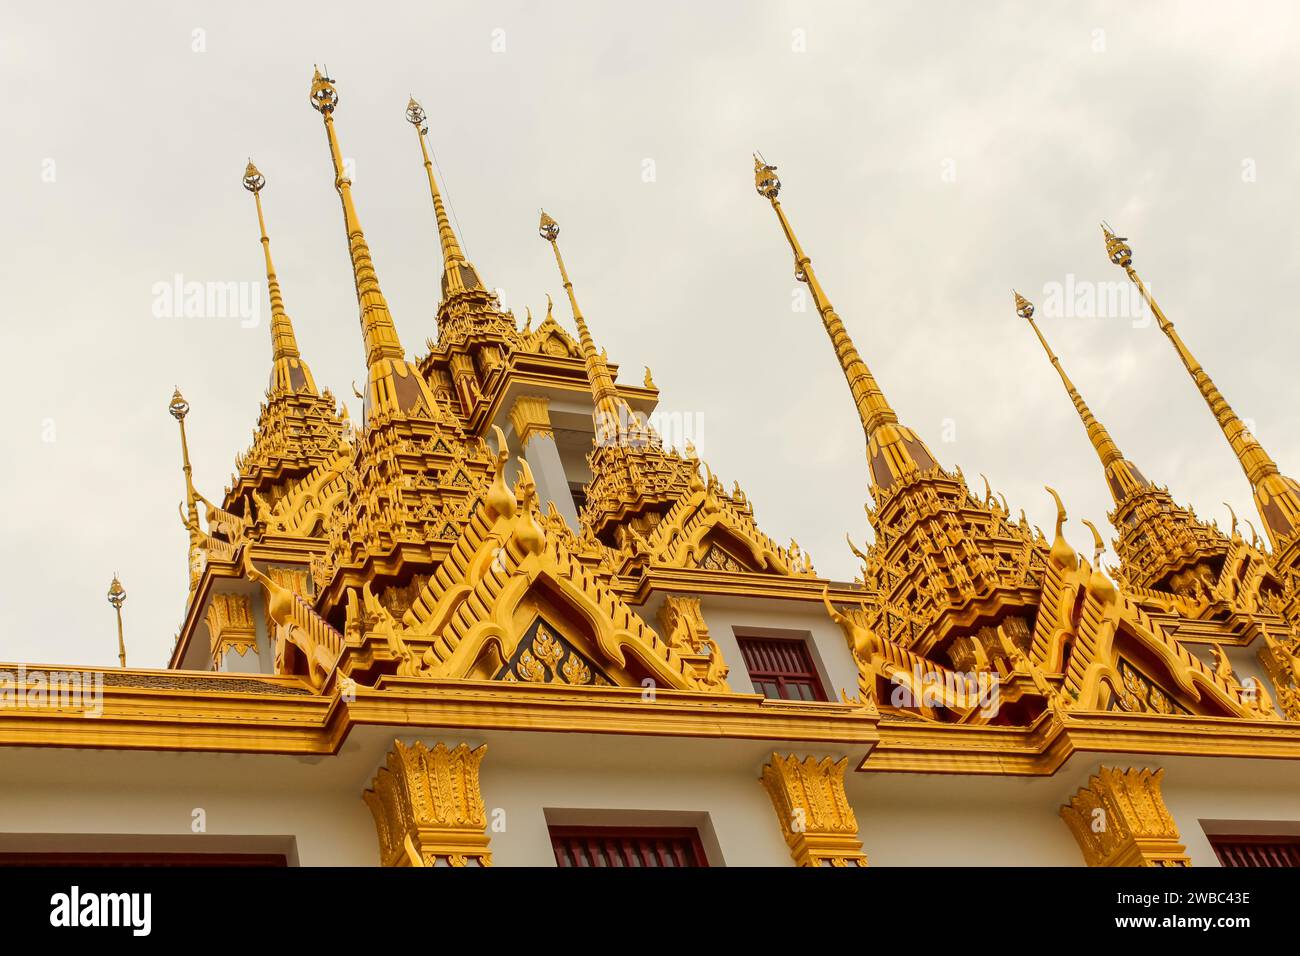 Bangkok, Thaïlande. Loha Prasat, qui signifie château de fer ou monastère de fer. Loha Prasat ou château de fer est une partie du temple bouddhiste Wat Ratchanatdaram. Banque D'Images